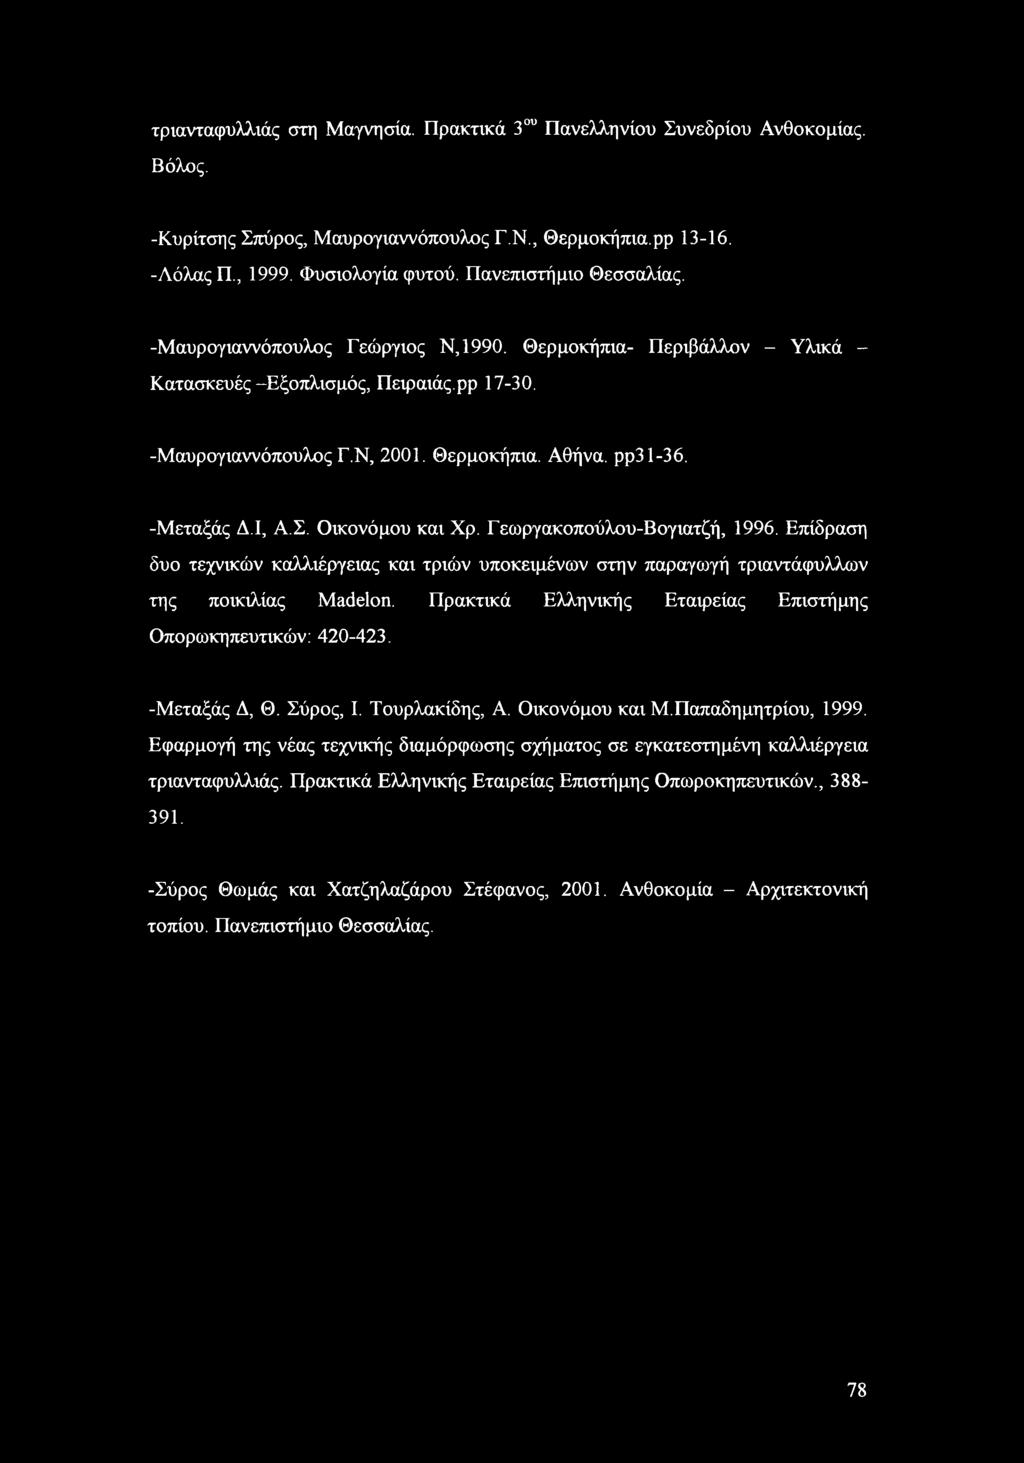 -Μεταξάς Δ.Ι, Α.Σ. Οικονόμου και Χρ. Γεωργακοπούλου-Βογιατζή, 1996. Επίδραση δυο τεχνικών καλλιέργειας και τριών υποκειμένων στην παραγωγή τριαντάφυλλων της ποικιλίας Madelon.